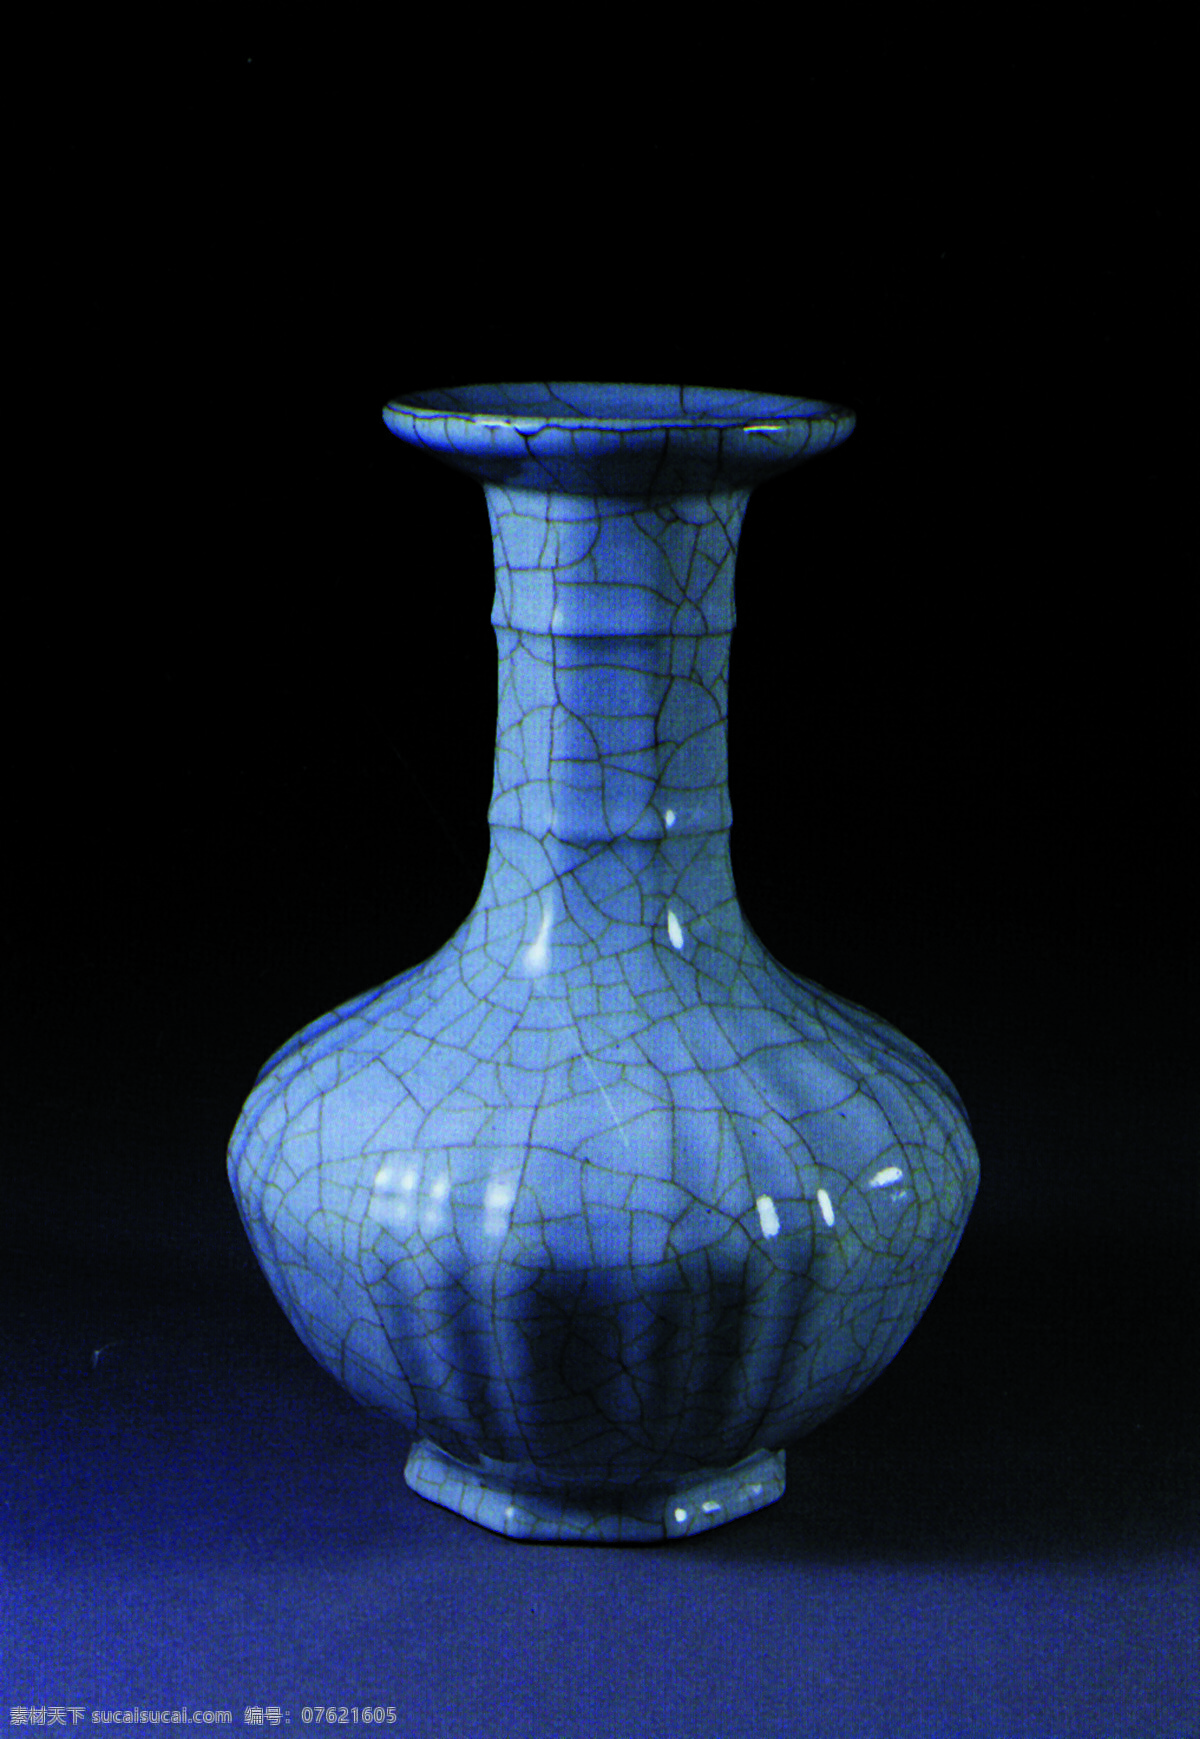 瓶子免费下载 瓷器 古董 花瓶 瓶子 陶瓷 艺术品 玉如意 中国风 中华艺术绘 文化艺术